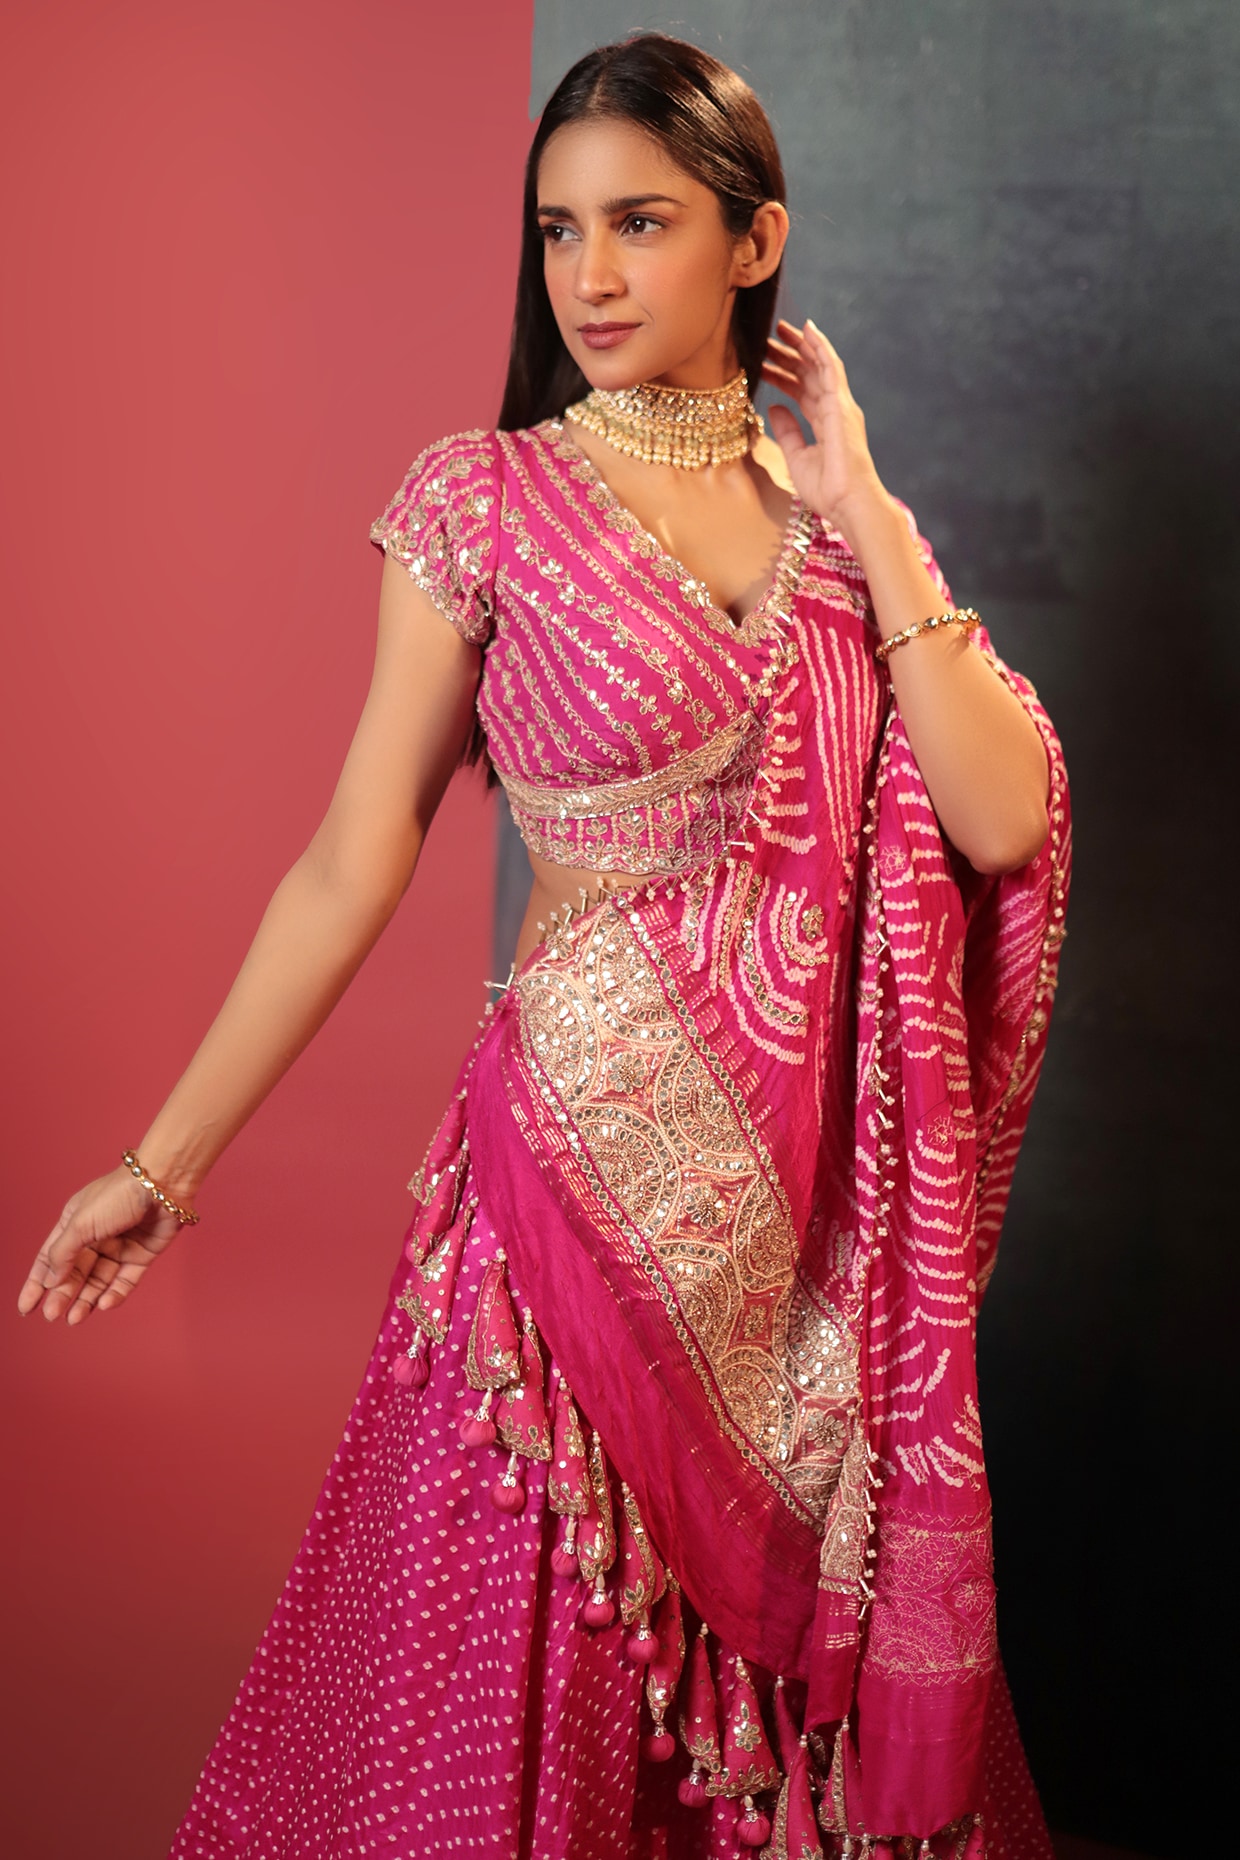 Pink Bandhani Lehenga Choli for Women Party Wear Bollywood Lengha  Sari,indian Wedding Embroidered Stitched Lehenga Choli With Dupatta - Etsy